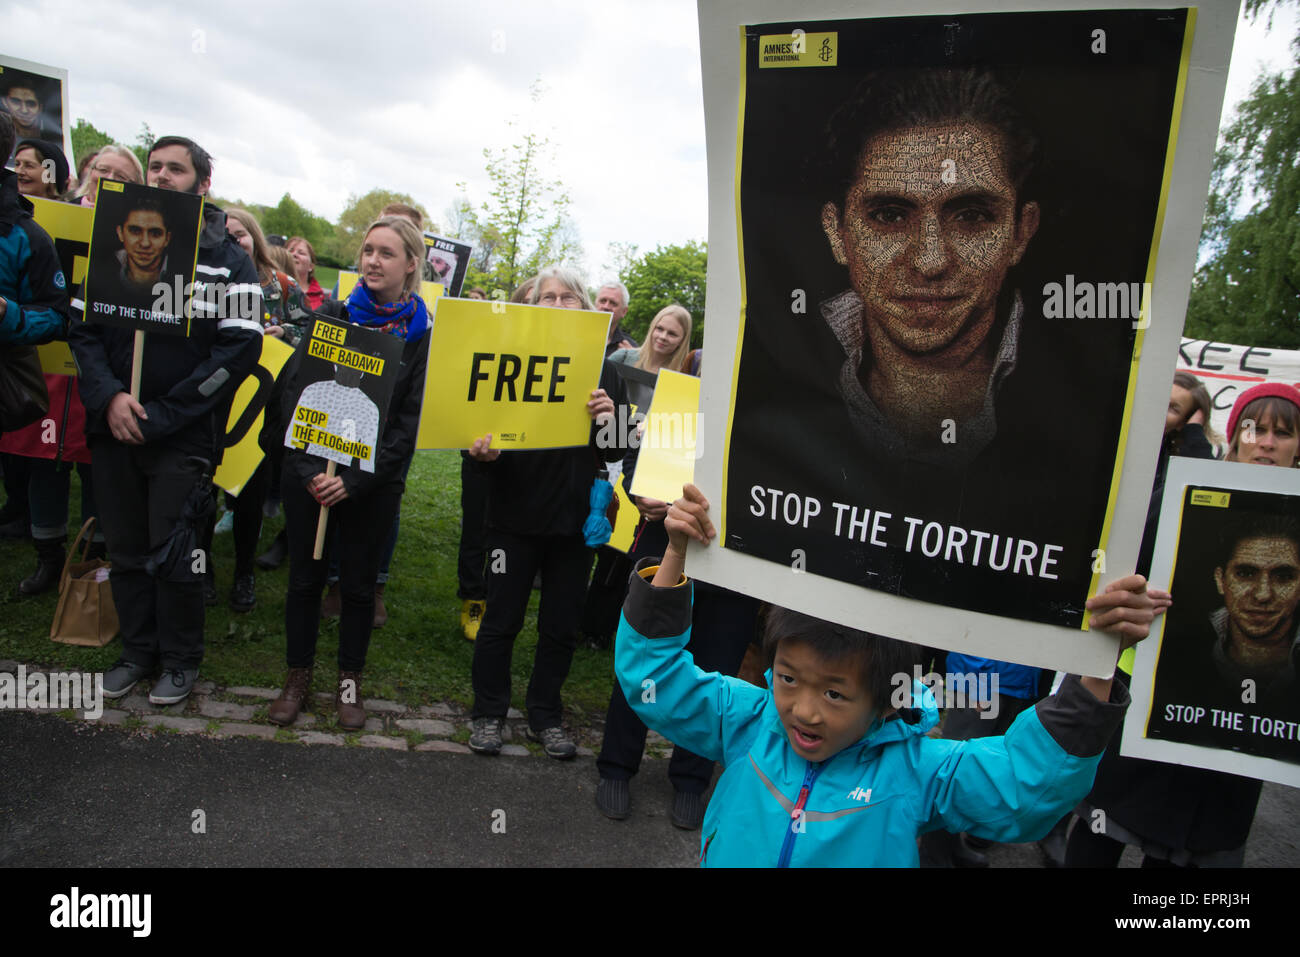 Menschenrechts-Aktivisten protestieren in der Saudi-Arabischen Botschaft in Oslo Aufruf für die Freiheit der Inhaftierten Blogger Raif Badawi. Stockfoto